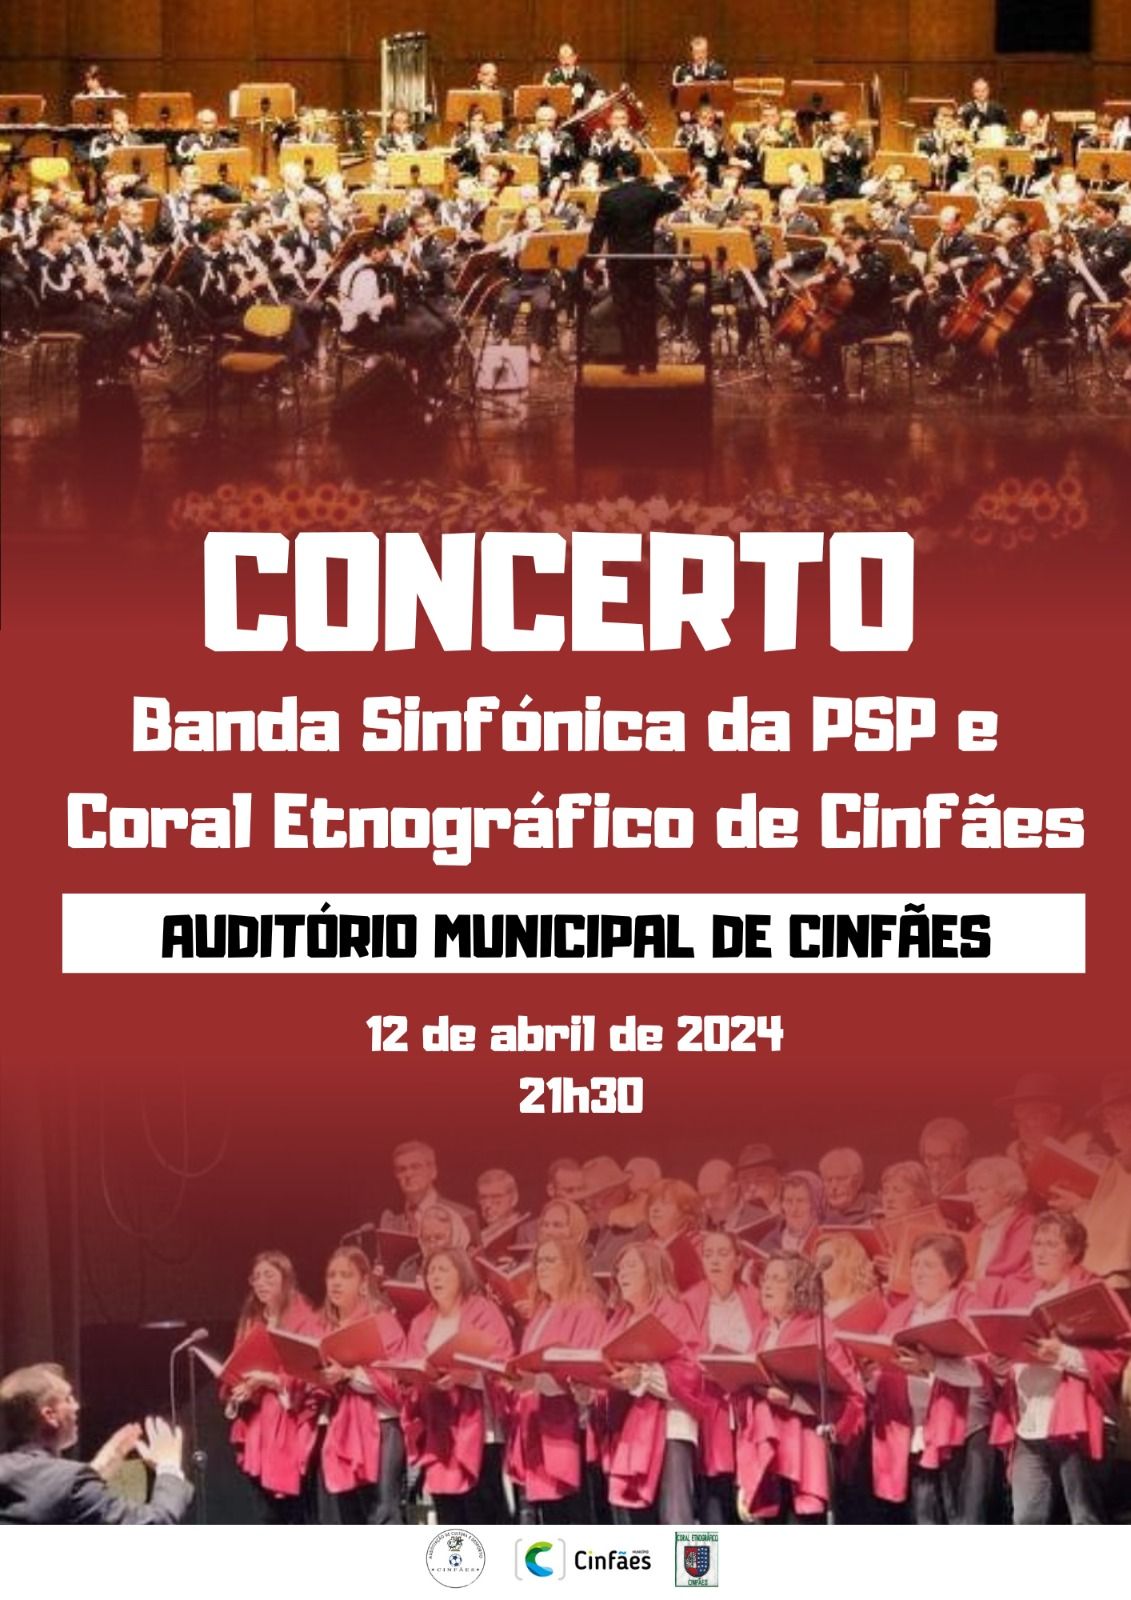 Concerto da Banda Sinfónica da PSP e do Coral Etnográfico de Cinfães